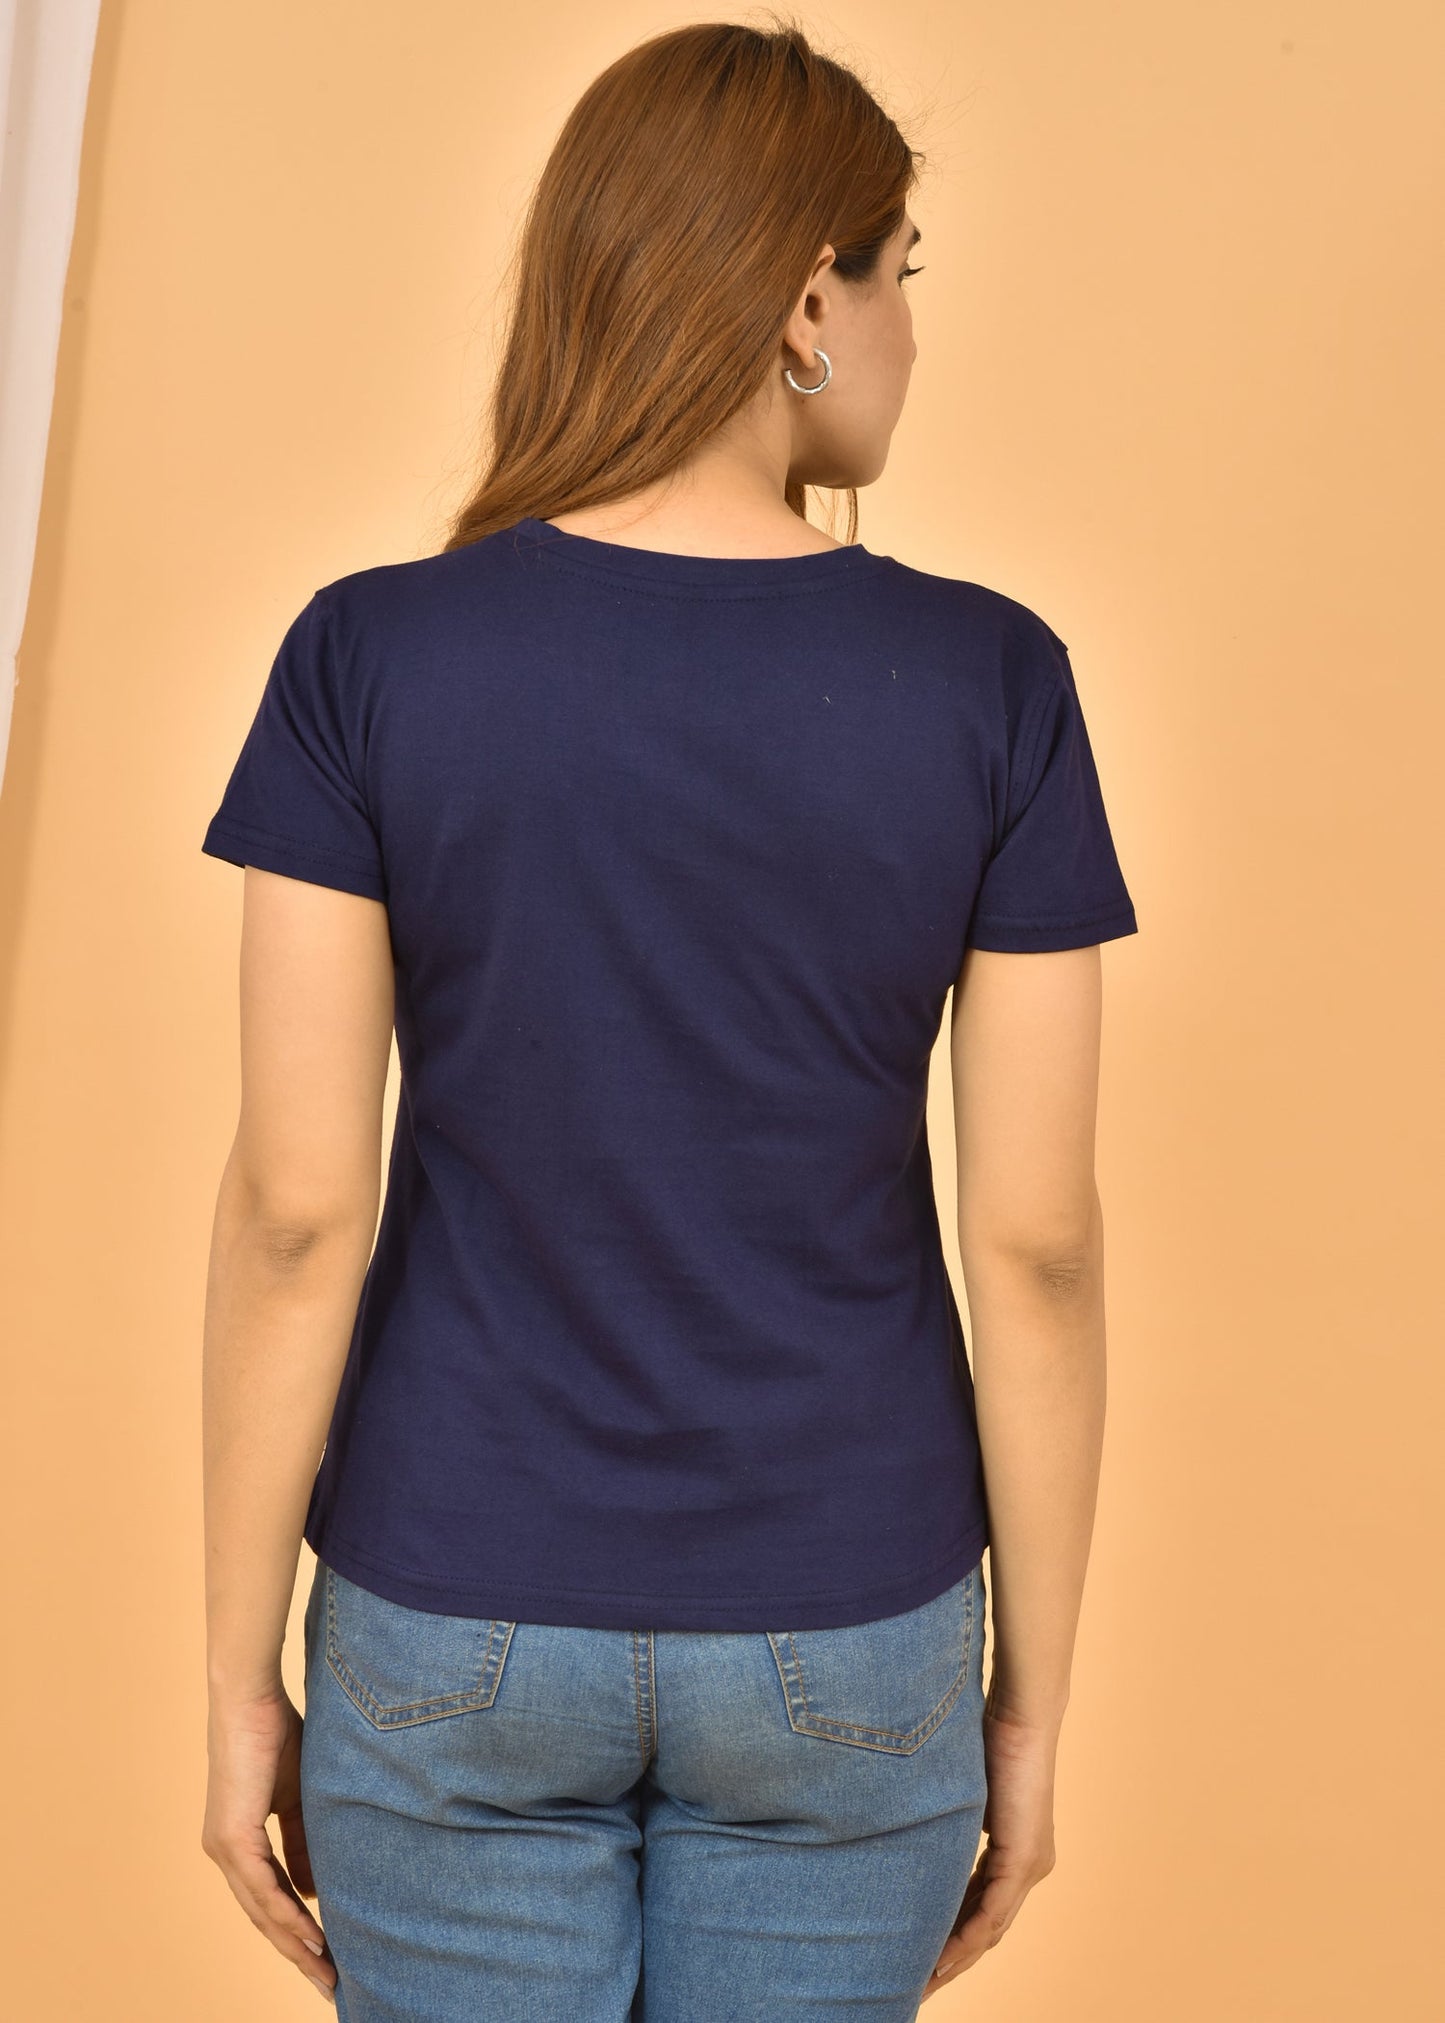 Couple Navy Blue Round Neck Cotton Blend Plain T-shirt Set